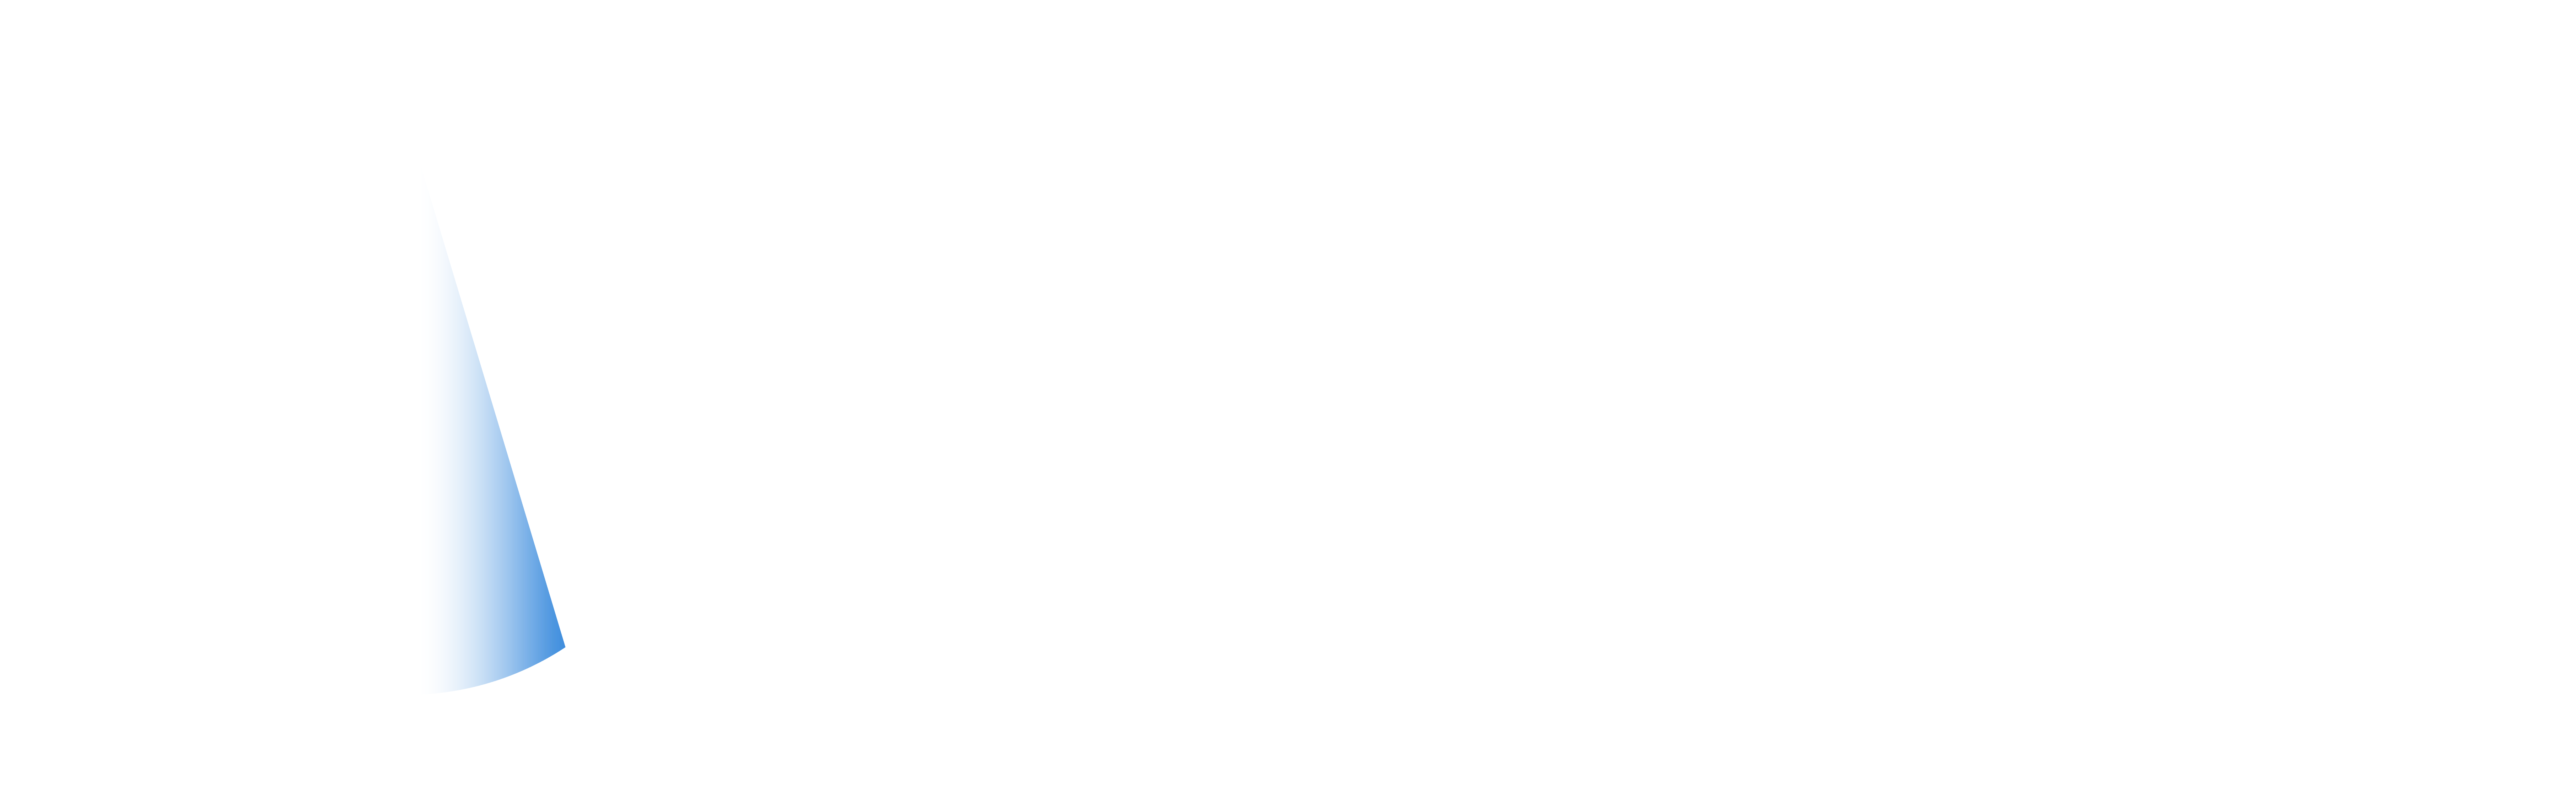 affidea logo white